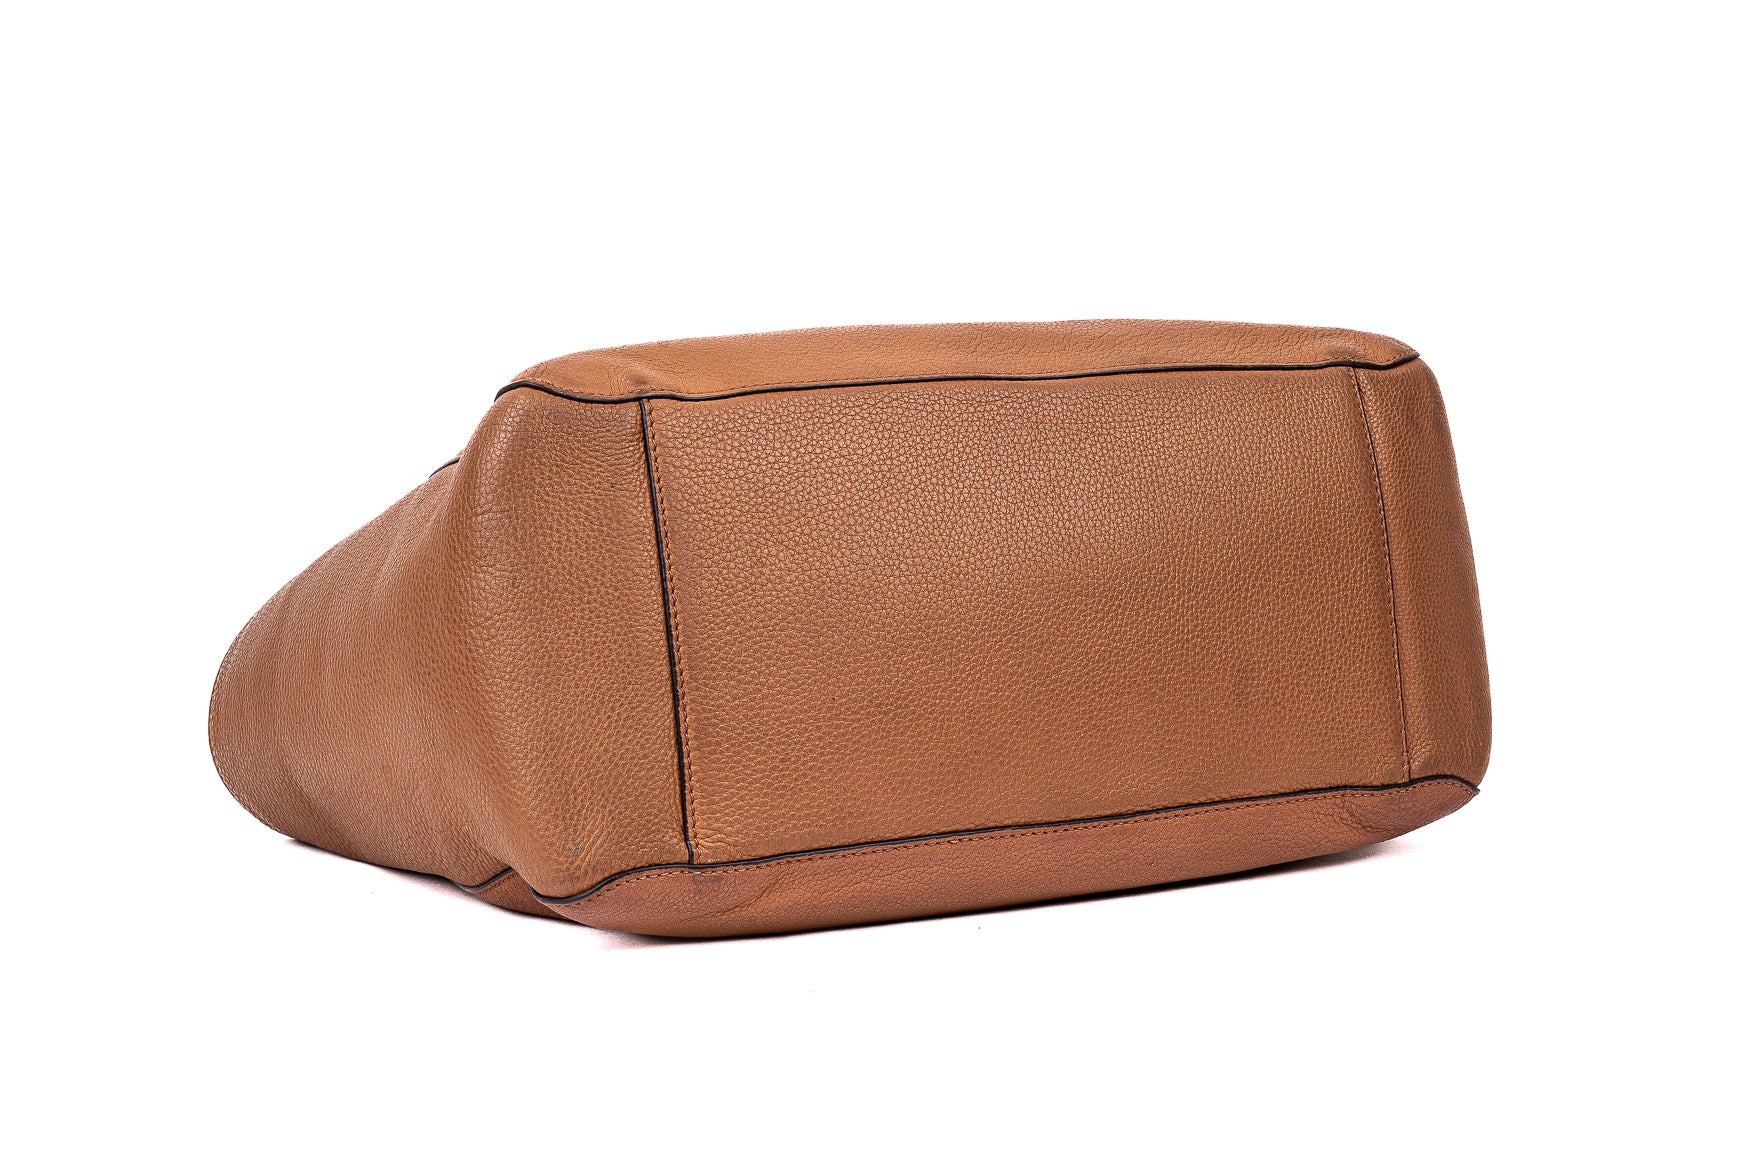 Cognac Leather Diaper Tote Bag